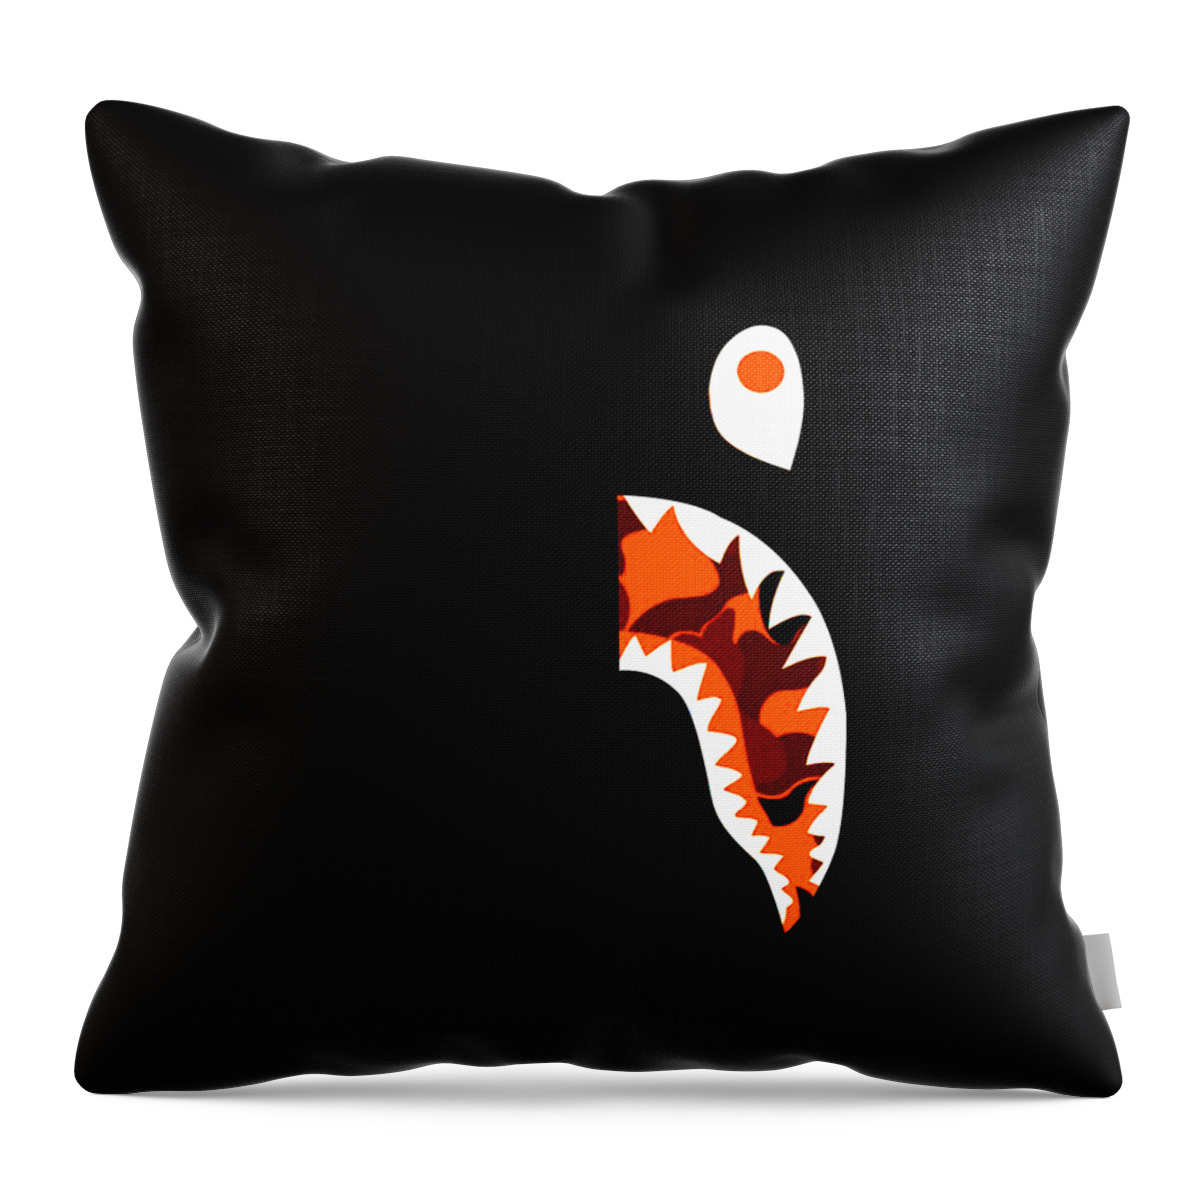 Bape, Shark, Sharks, Camo, Hypebeast, Phone, Case, Apple, Cases, Designer  #5 Throw Pillow by Samber Gledeck - Pixels